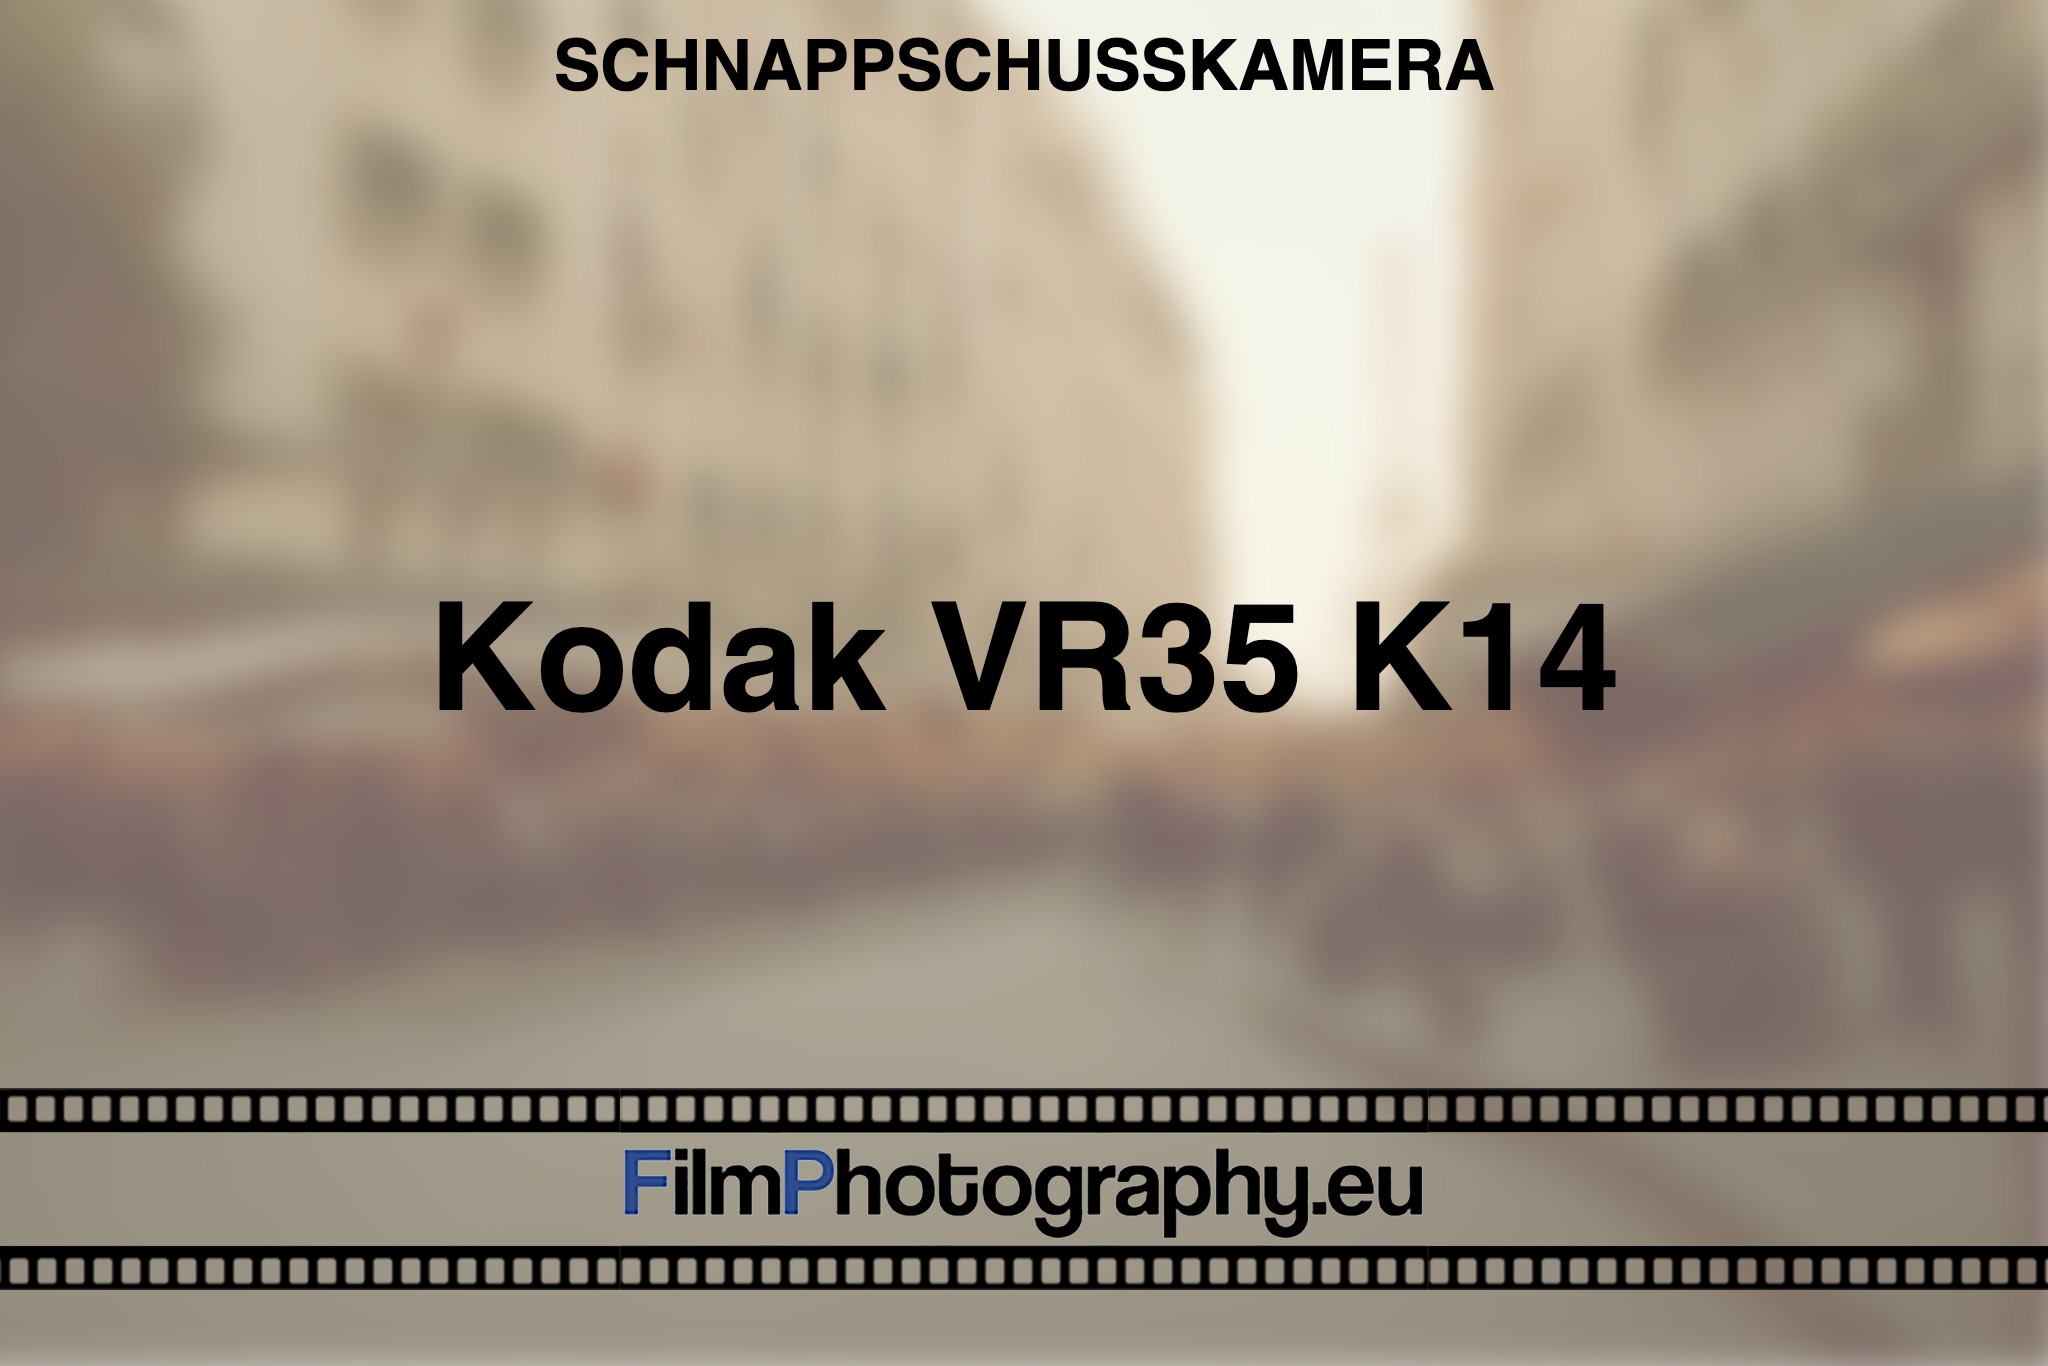 kodak-vr35-k14-schnappschusskamera-bnv